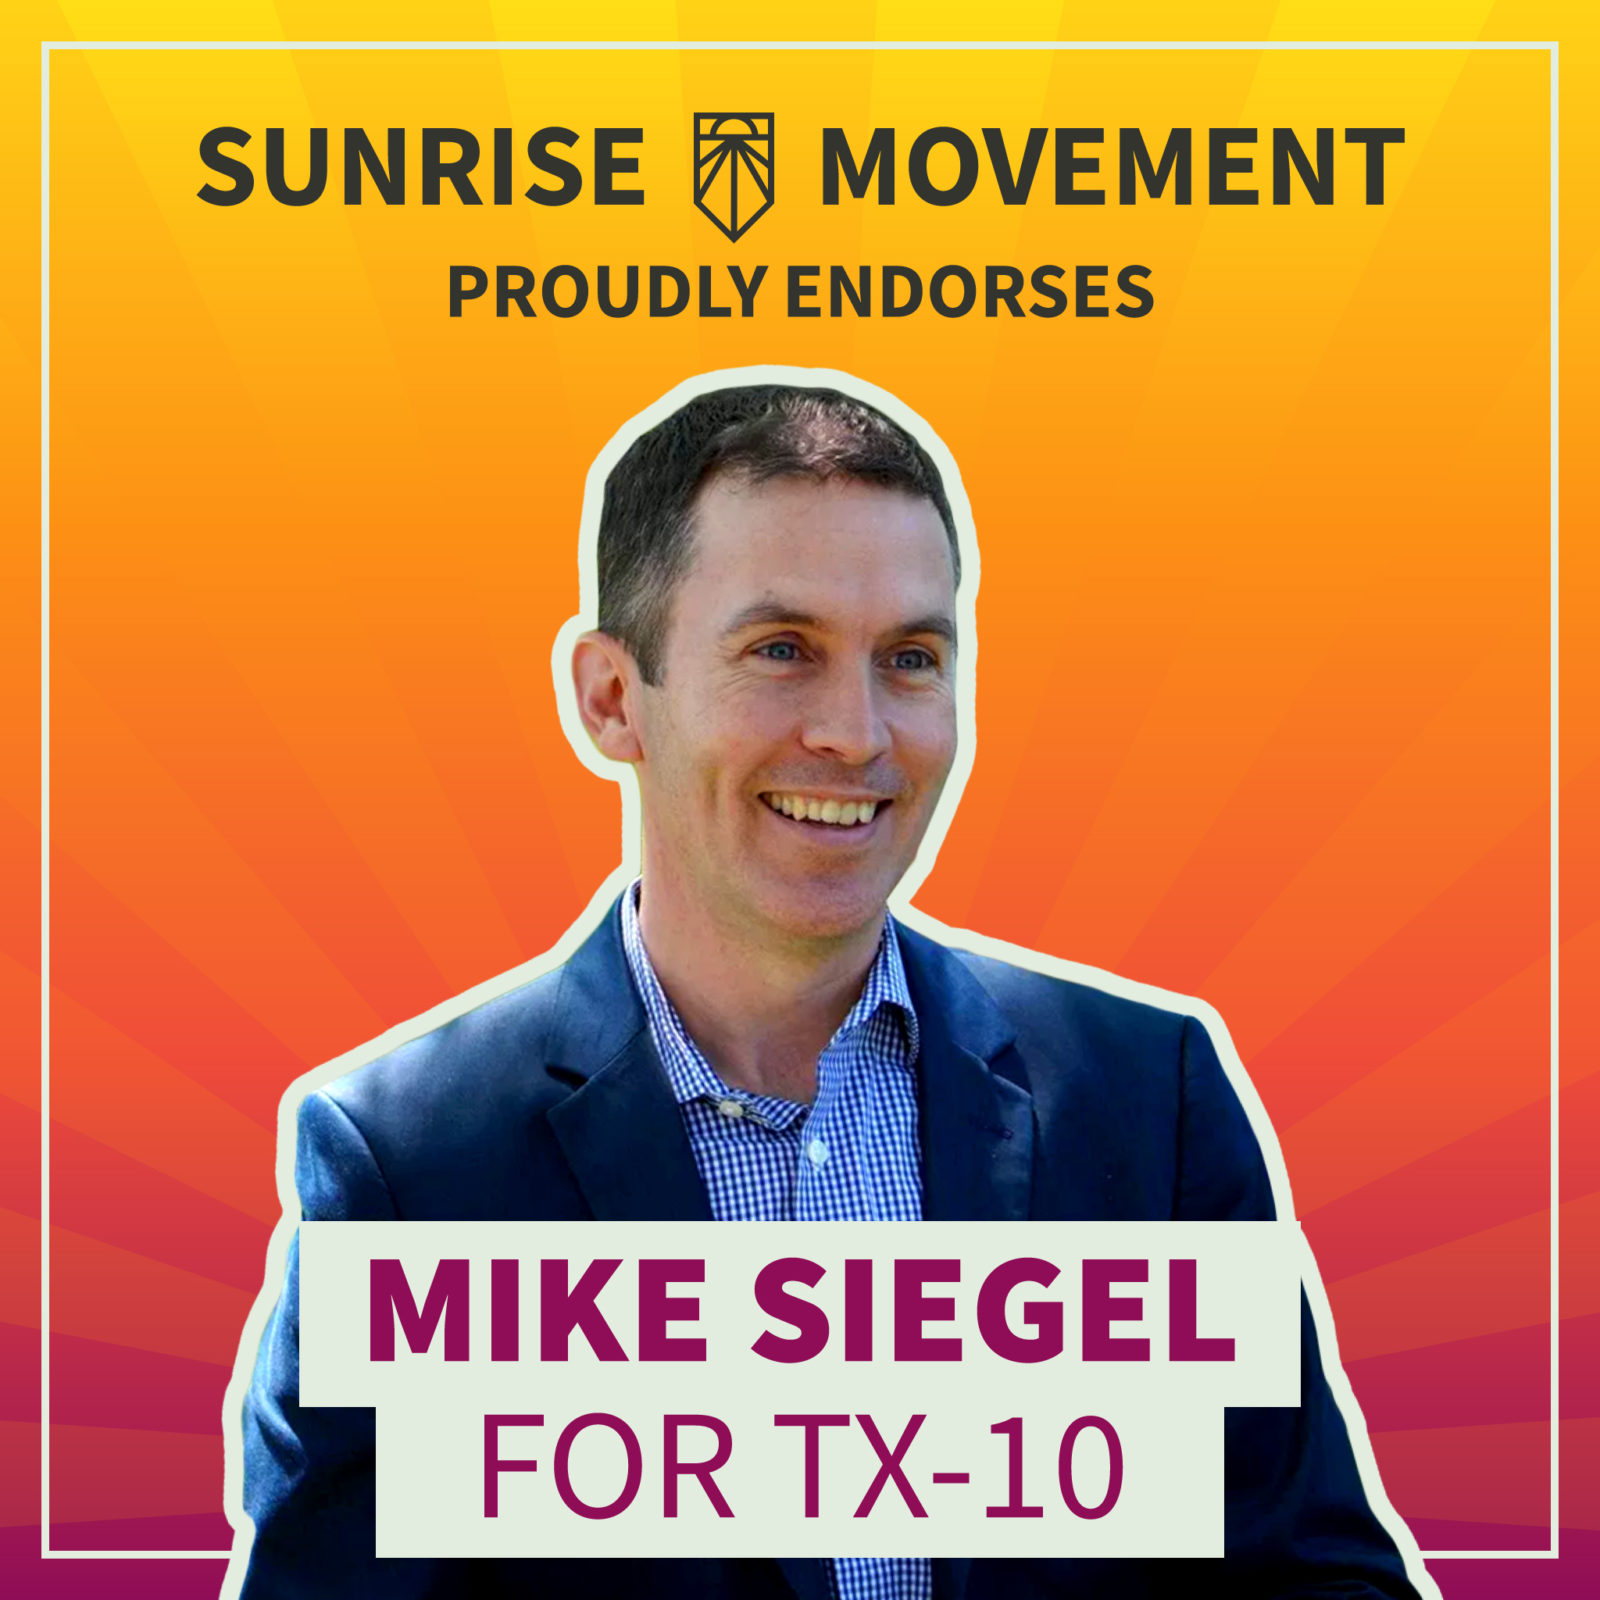 Фотография Майка Сигела с текстом: Sunrise Movement с гордостью поддерживает Майка Сигела для TX-10.